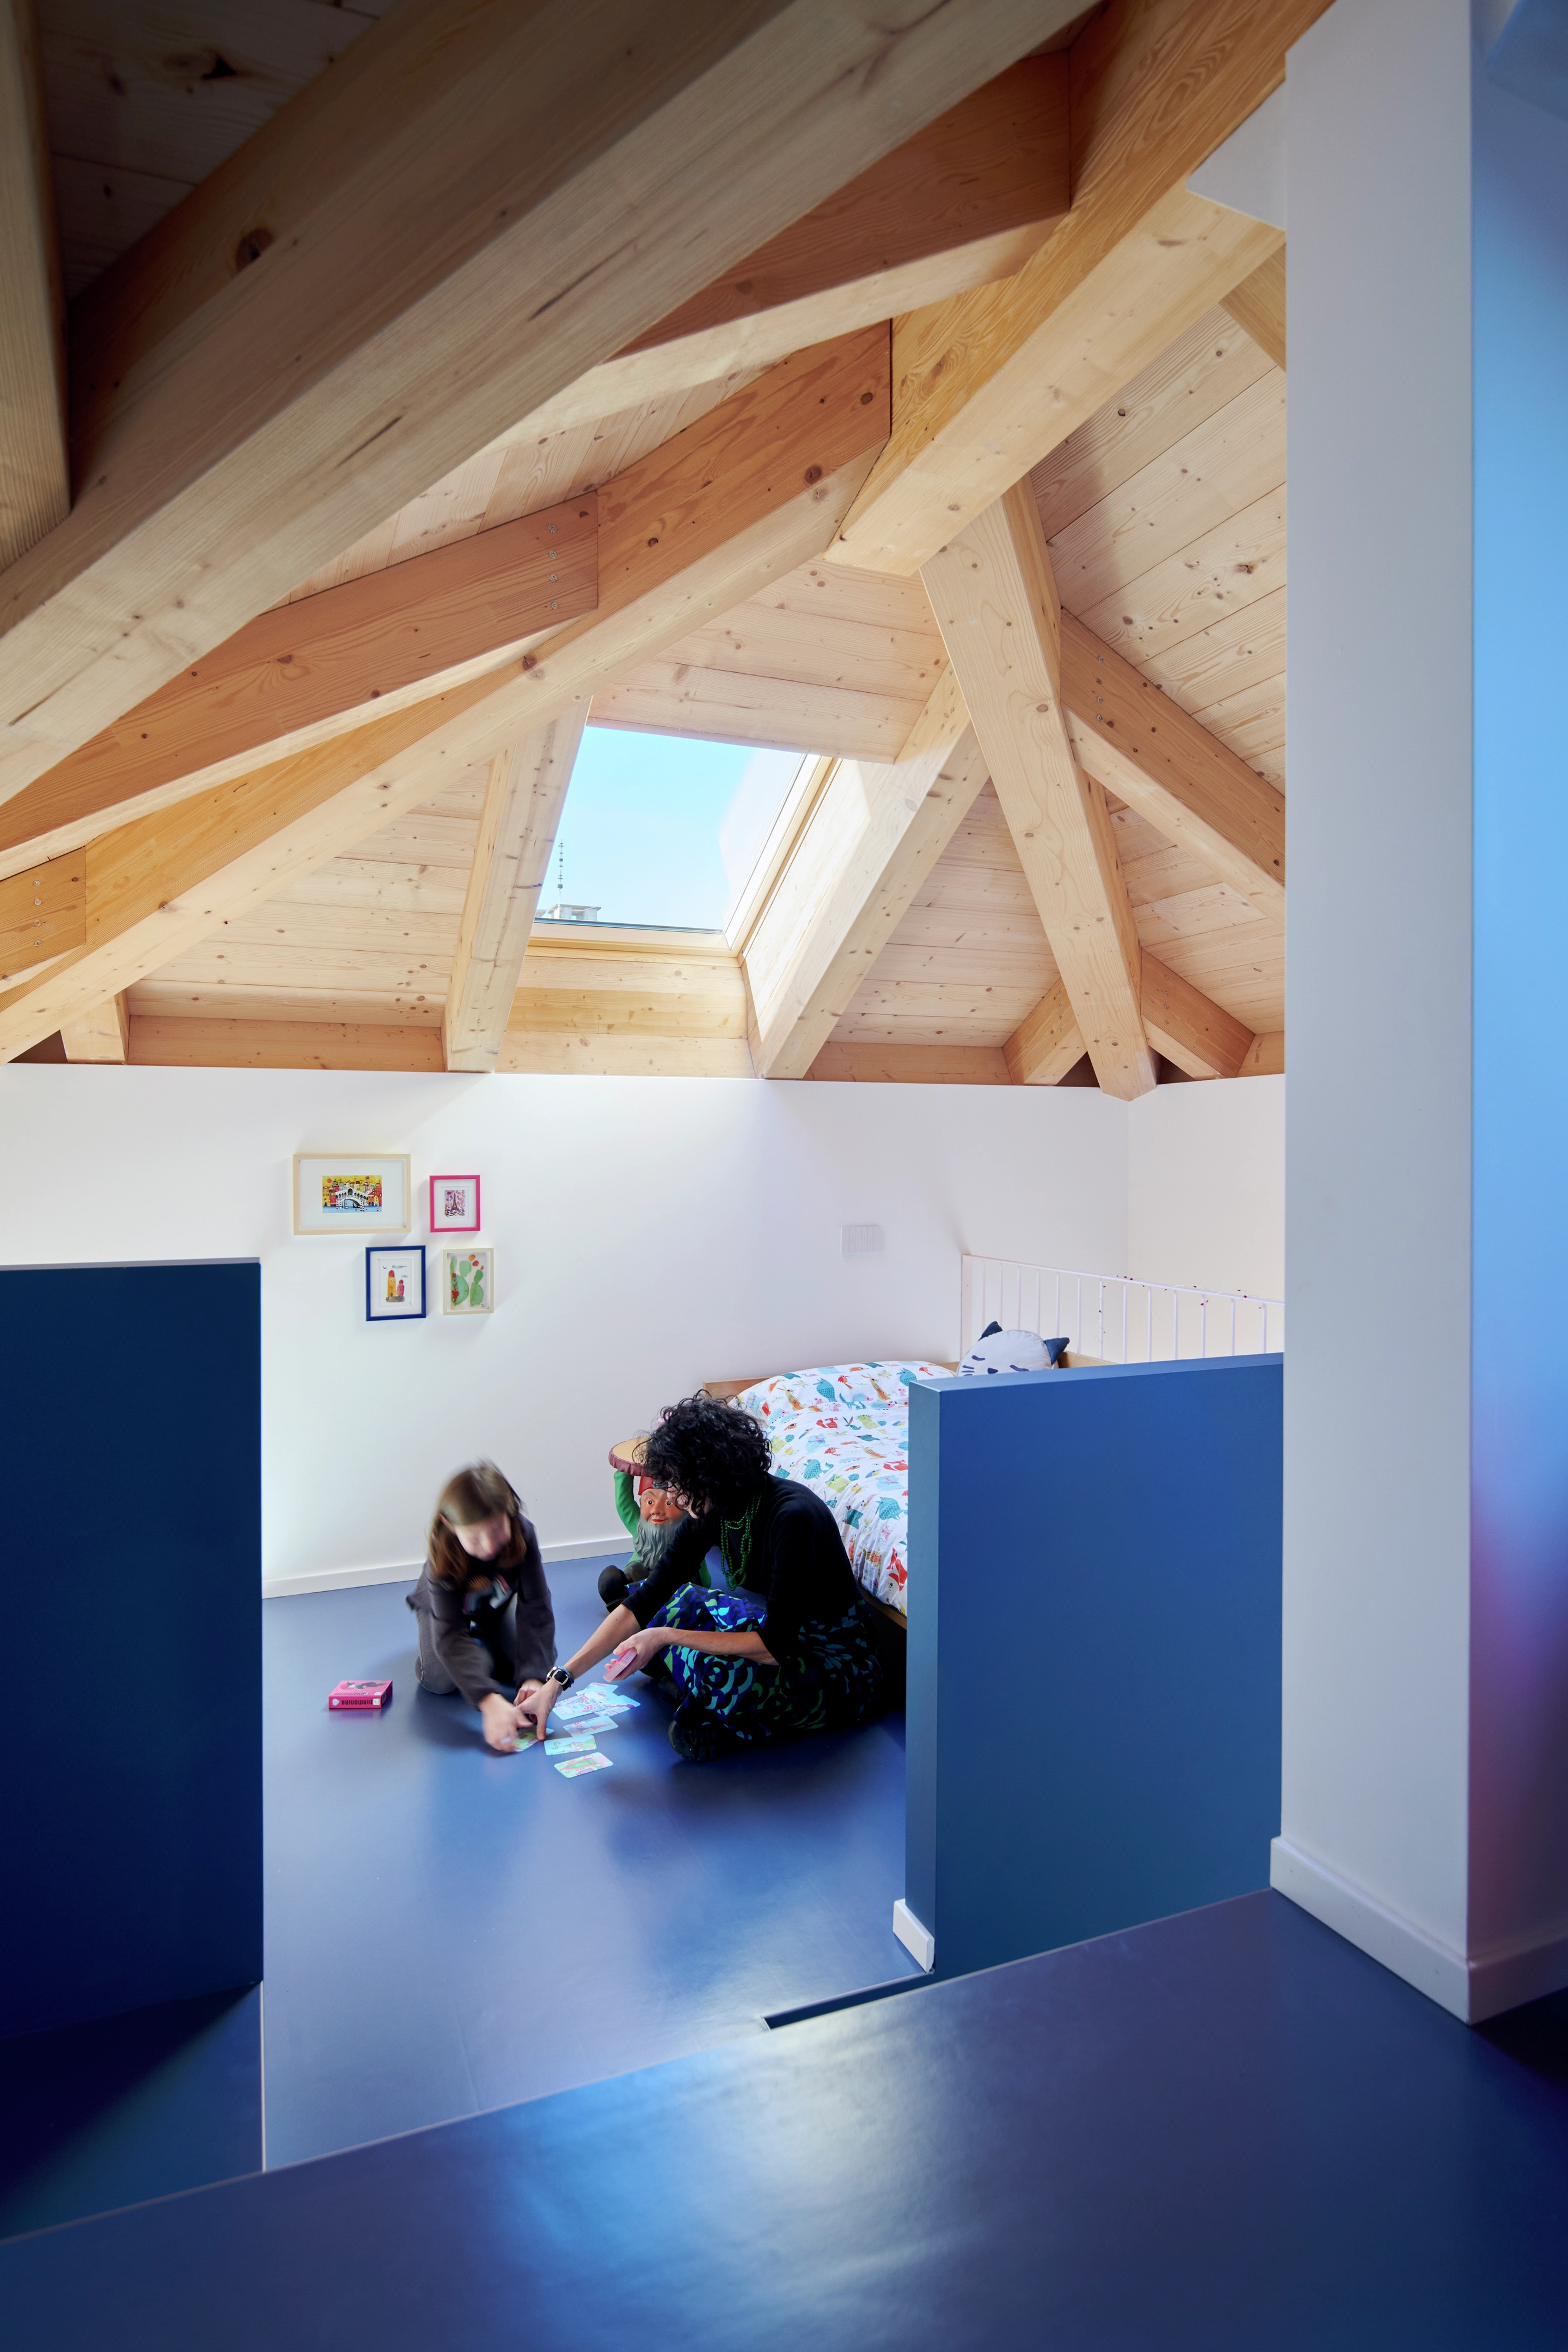 Salle de jeux dans le comble avec des poutres en bois et une fenêtre de toit VELUX, lit et espace de jeu.